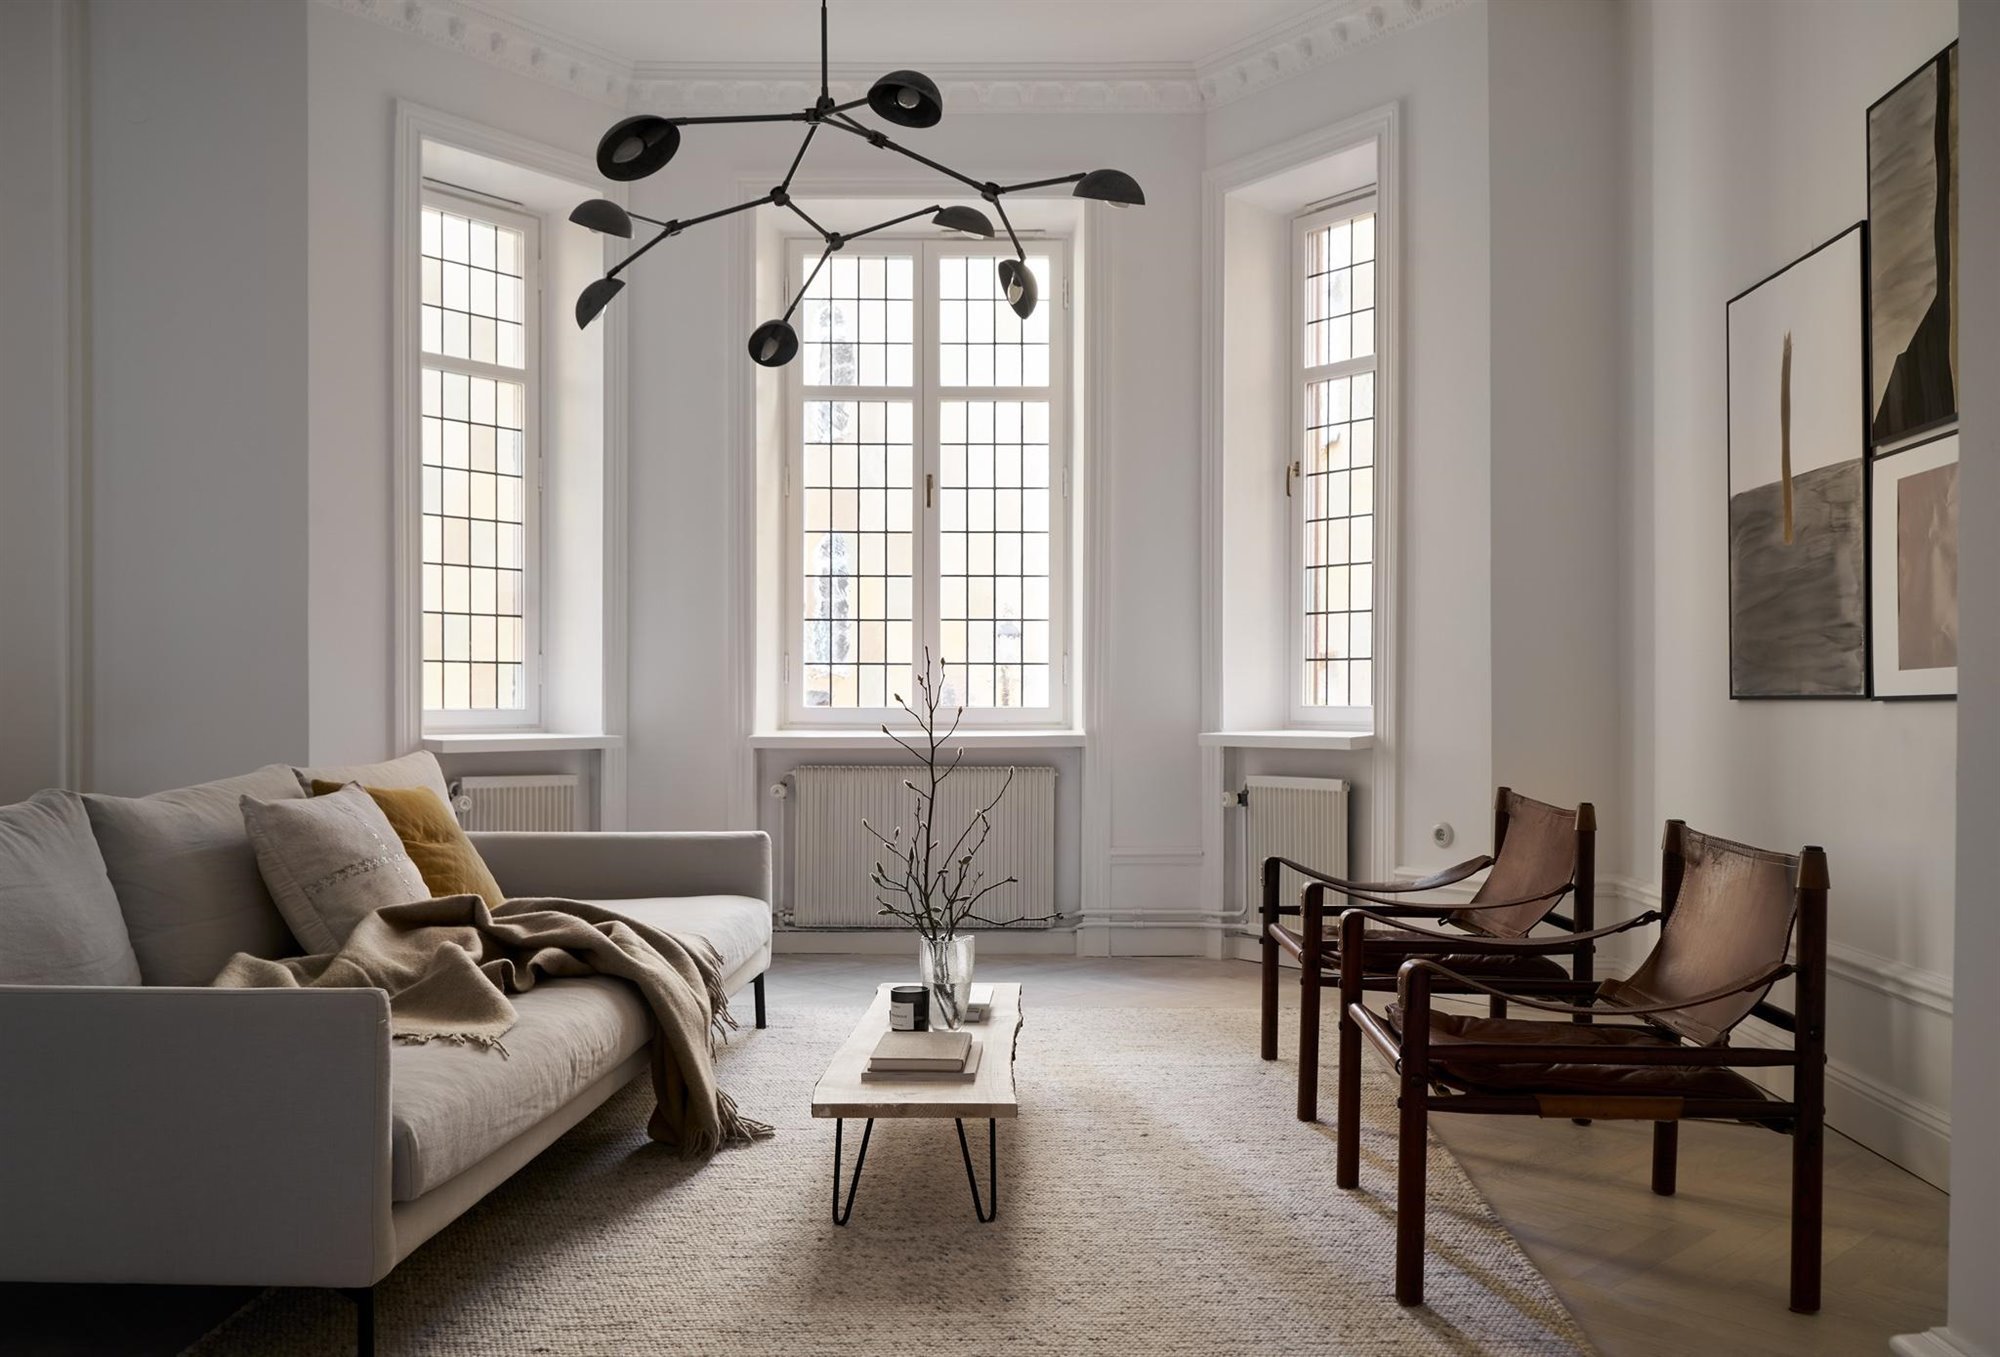 Piso con decoracion Nordica moderno con techos con molduras salon con sofa y butacas de piel